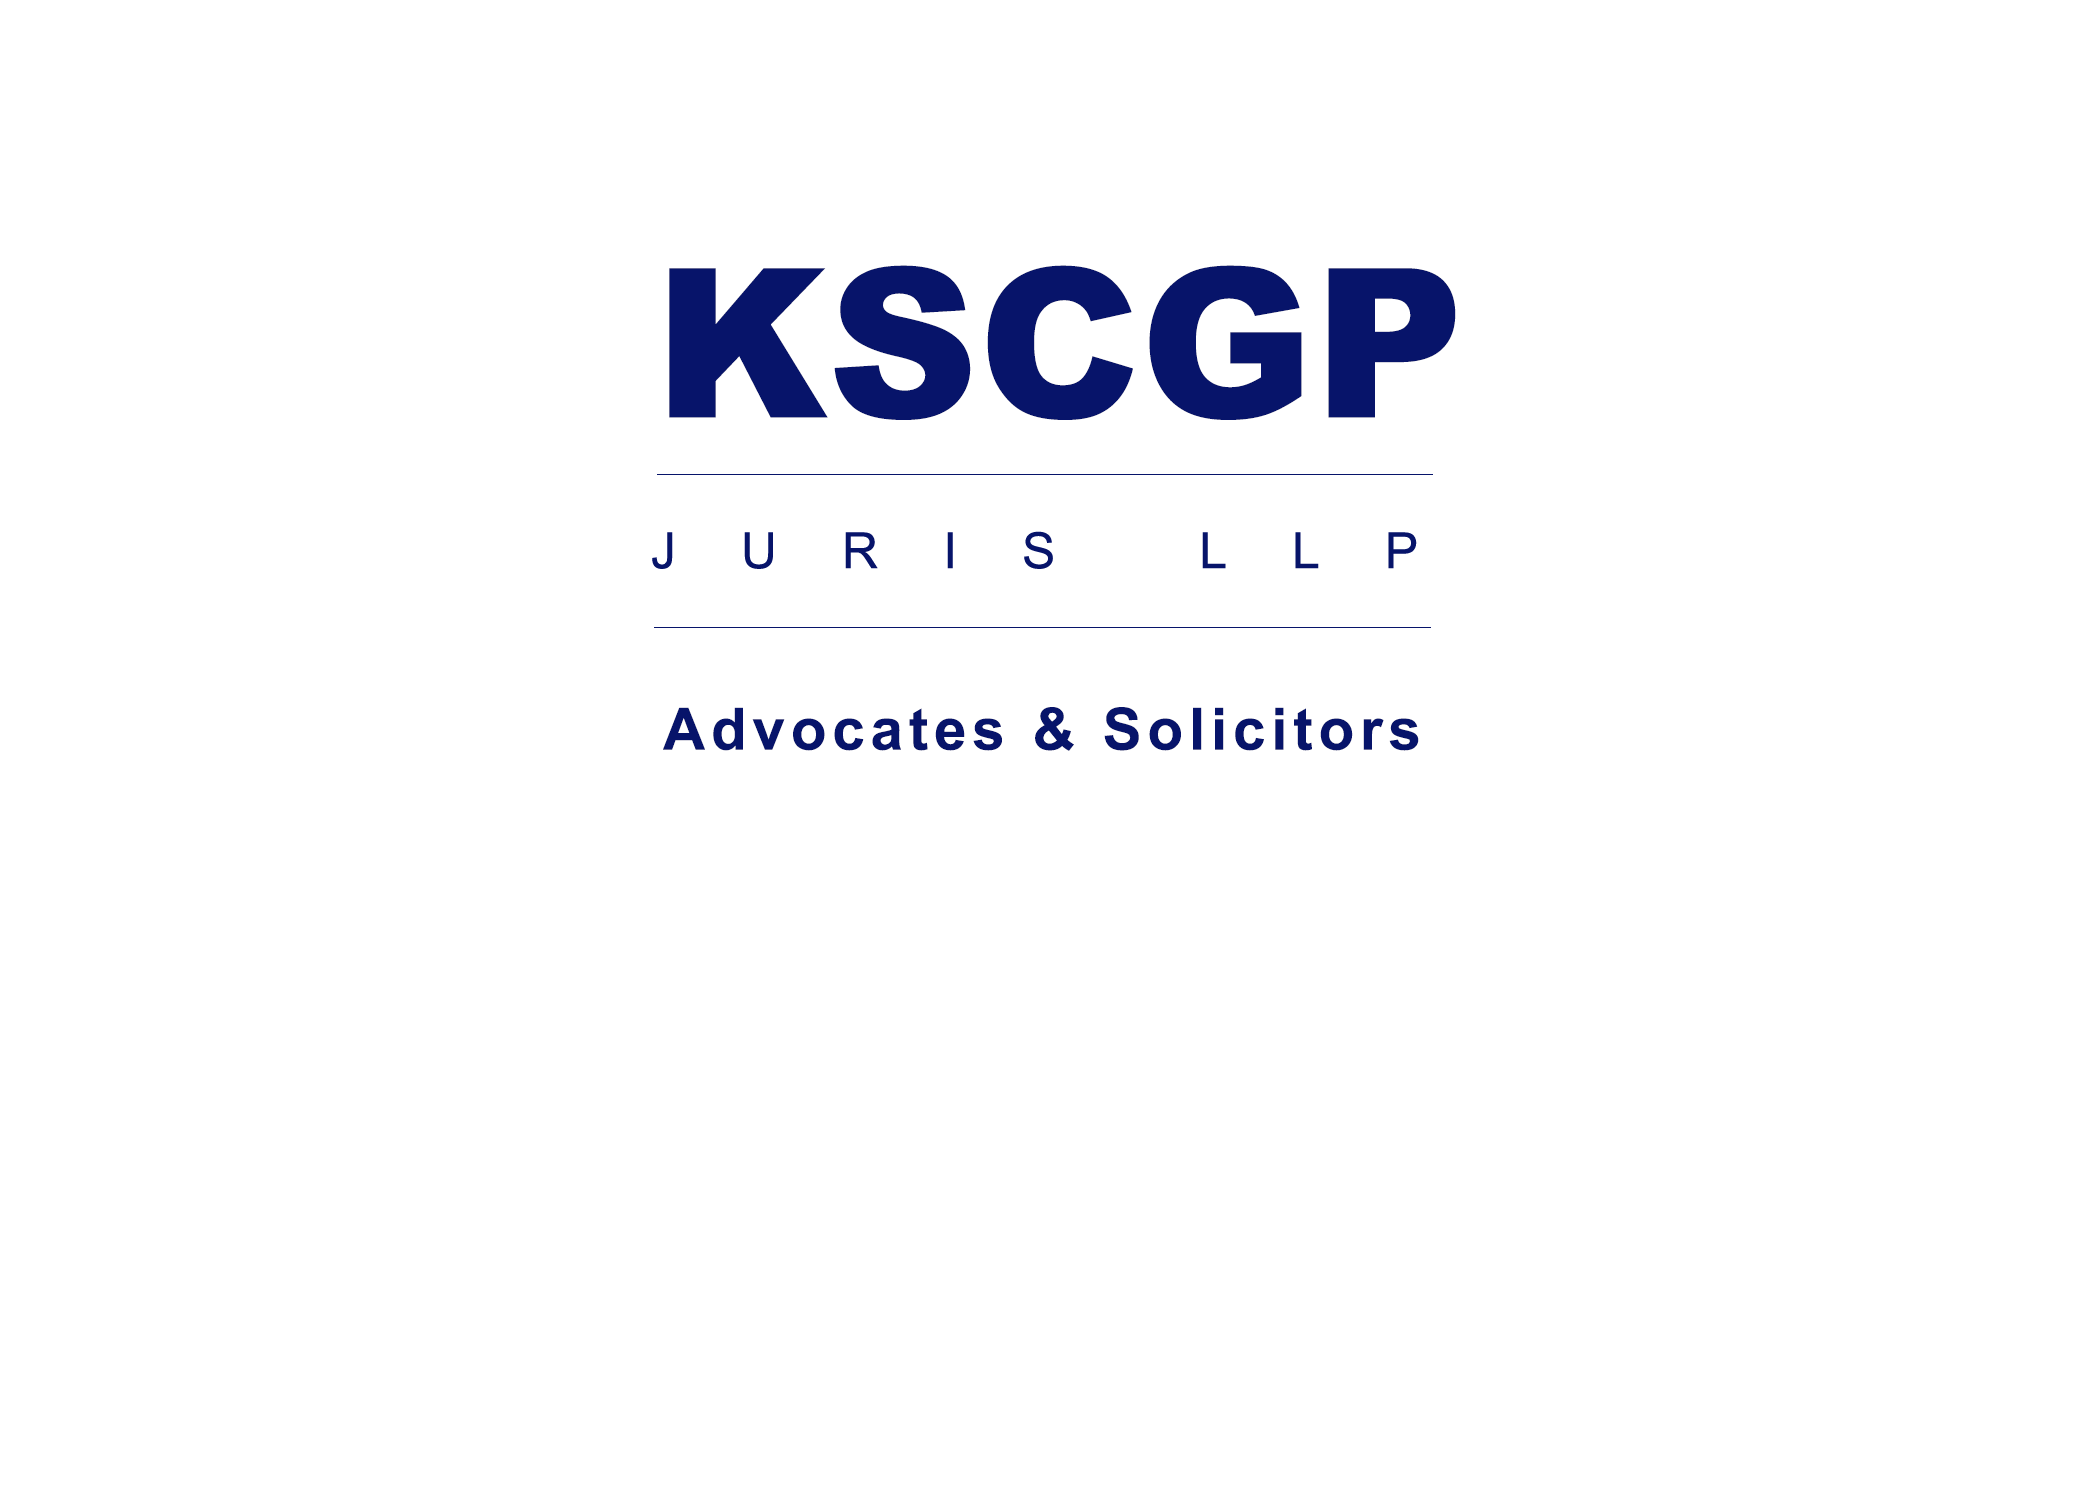 Kscgp Juris Llp logo